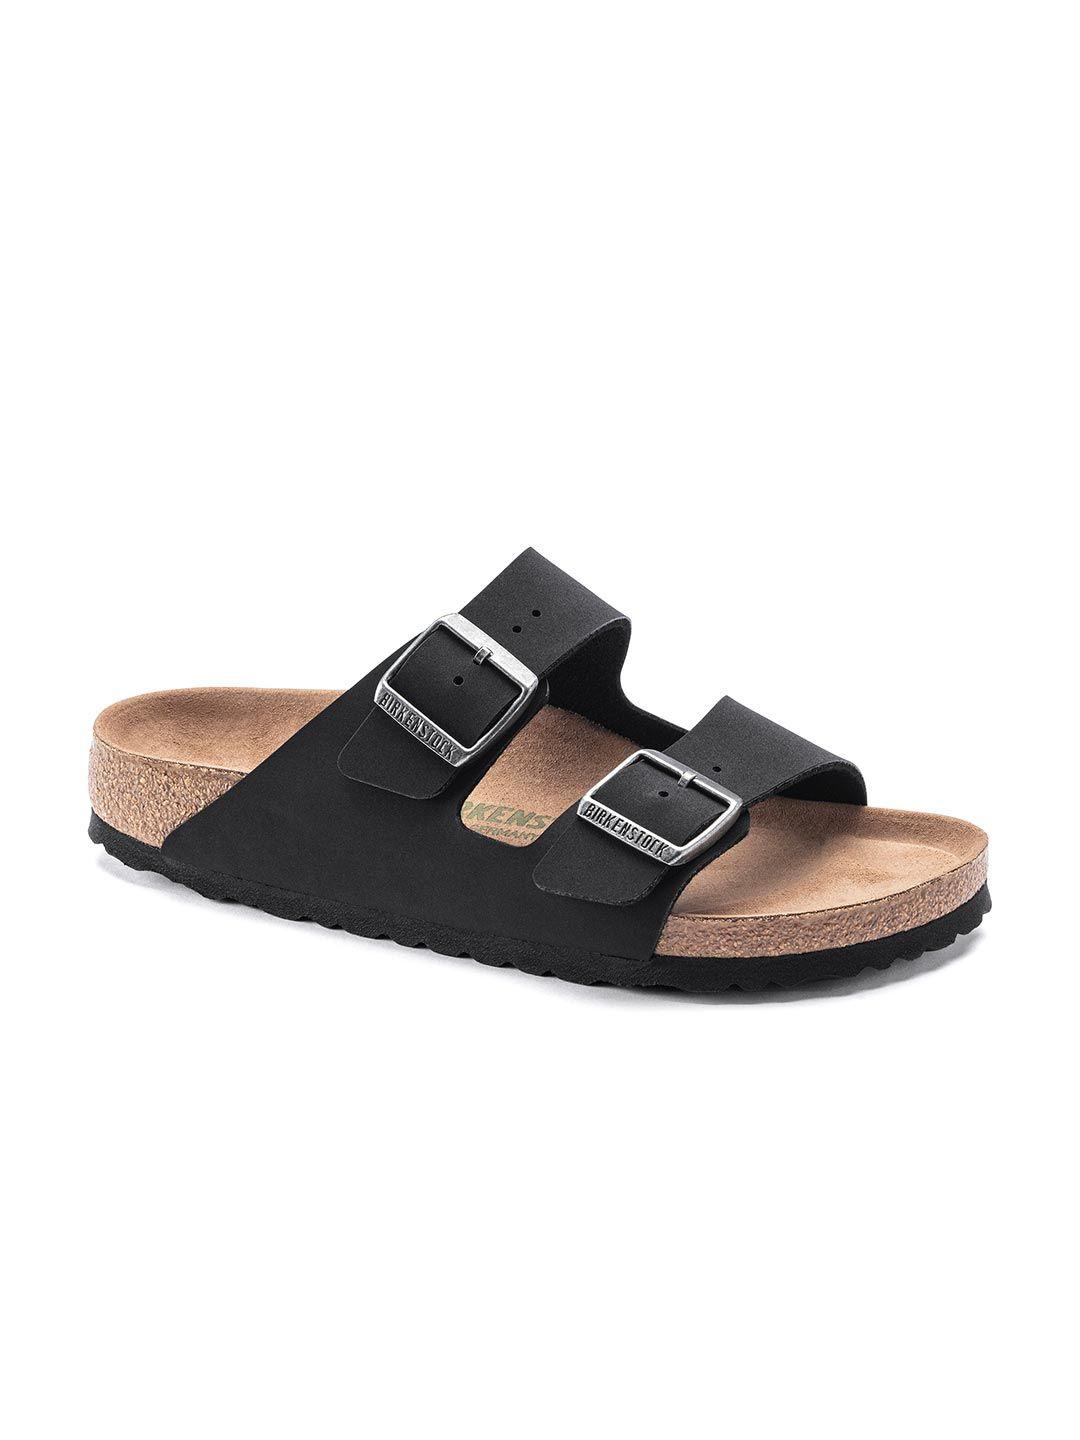 birkenstock unisex narrow width black arizona comfort sandals